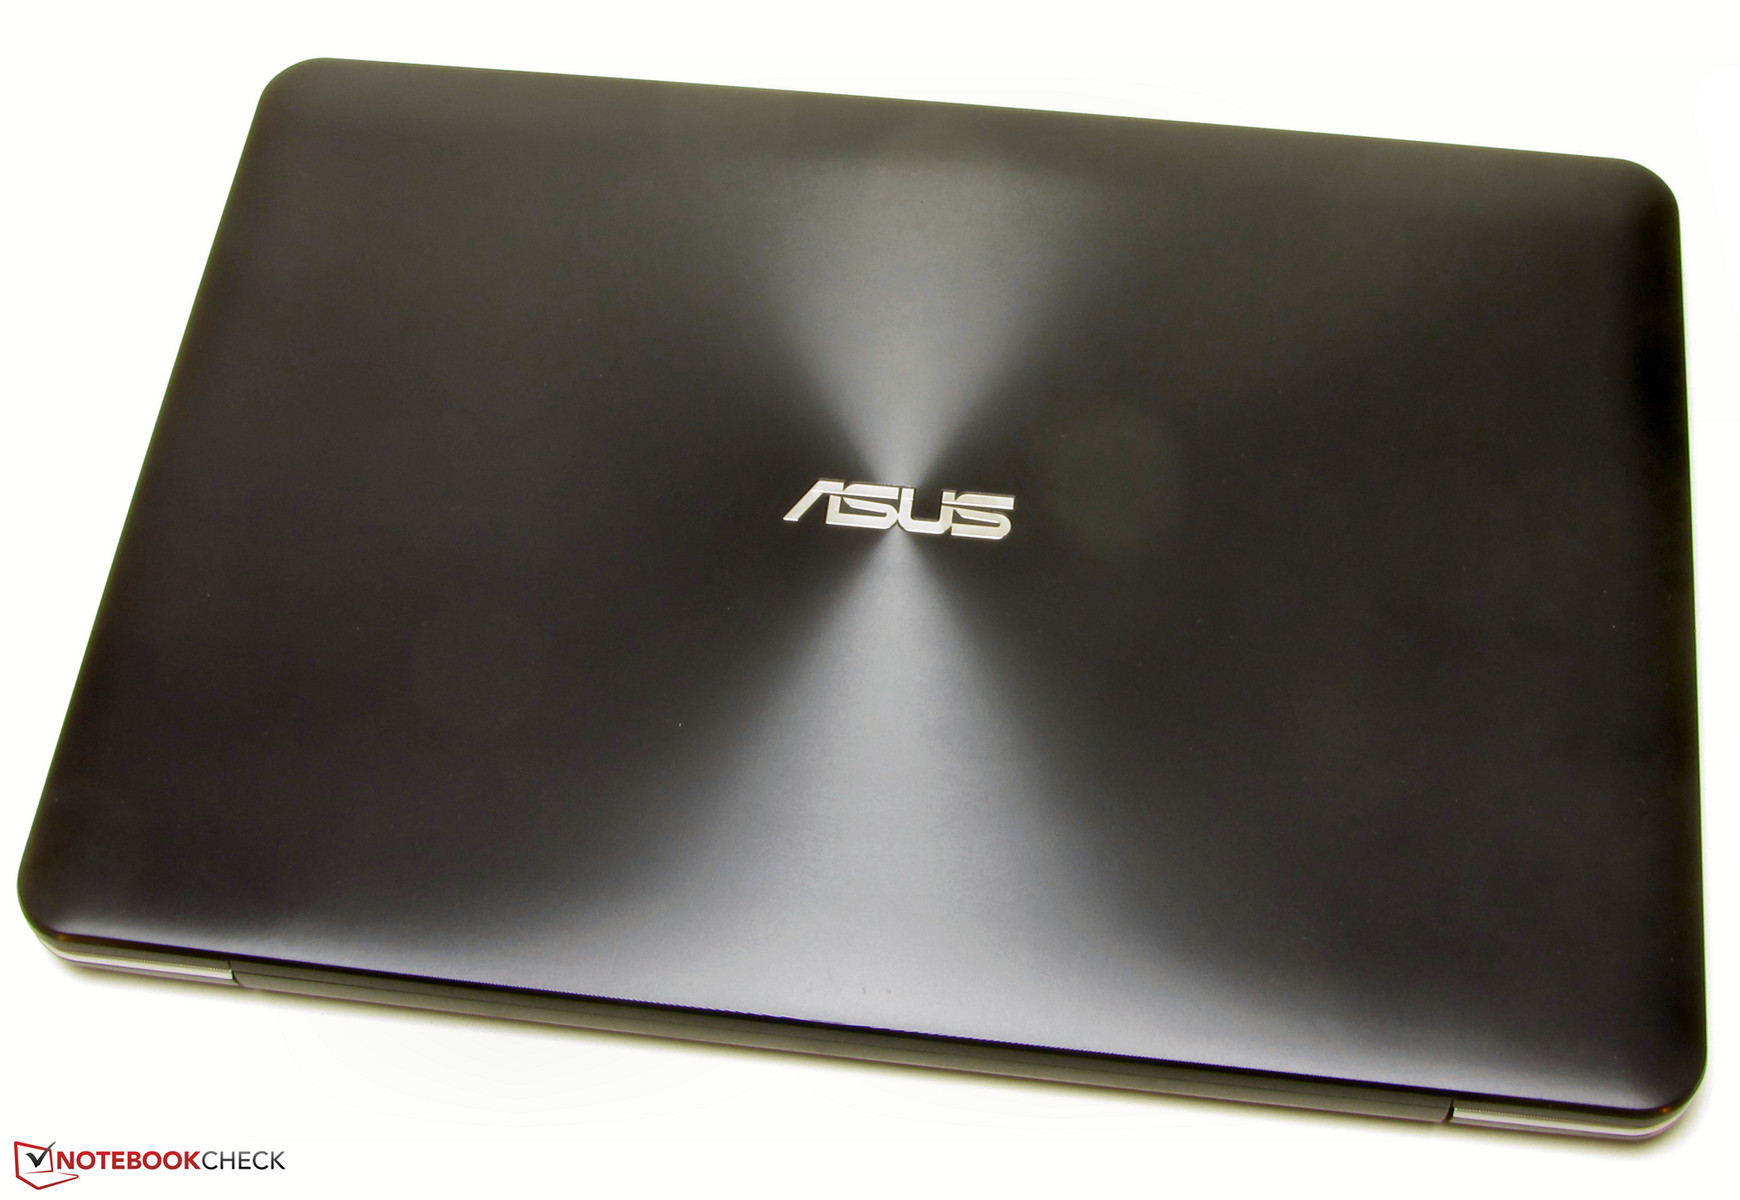 Купить Ноутбук Asus X555ld Цены